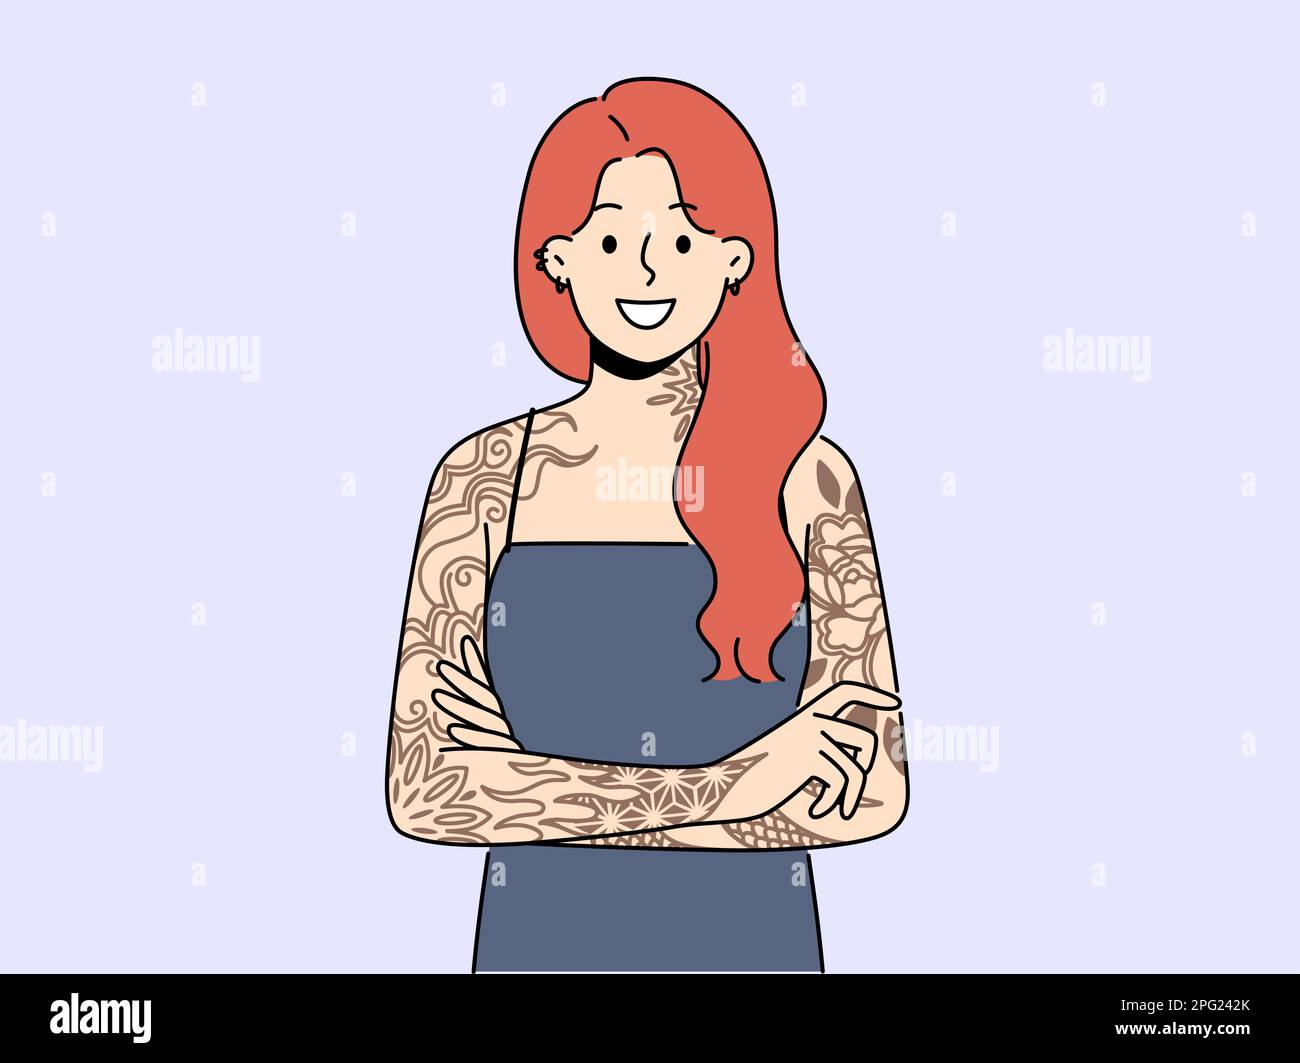 Lächelnde rothaarige Frau mit Tattoos auf den Armen. Eine glückliche Frau mit tätowierten Händen drückt Persönlichkeit aus. Subkultur und Selbstdarstellung. Vektordarstellung. Stock Vektor